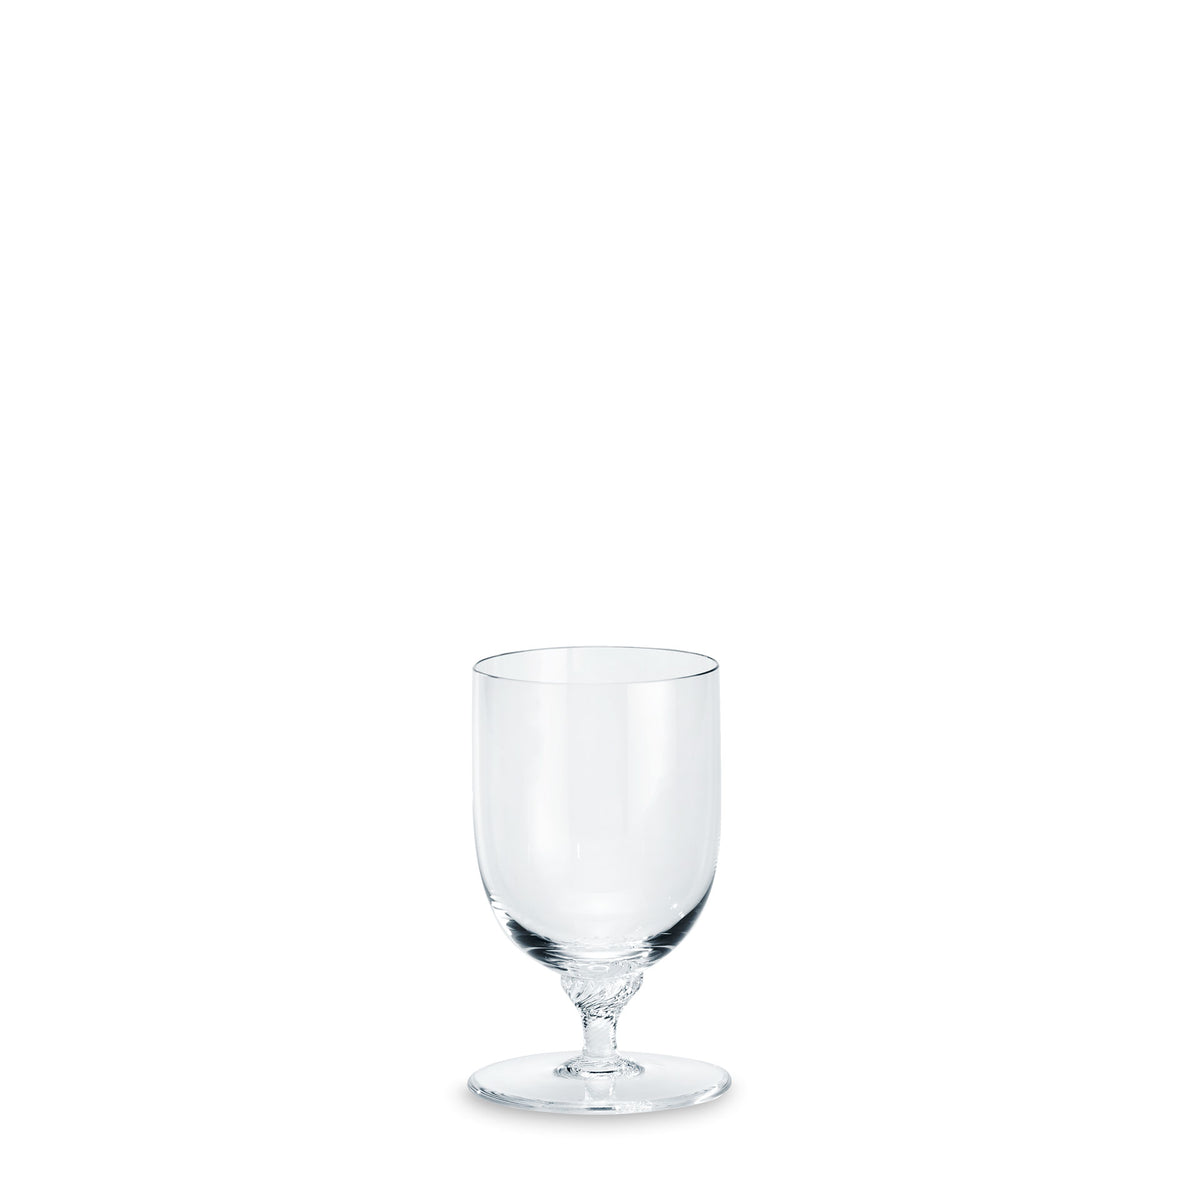 Château Wasserglas - ABVERKAUF - 50% REDUZIERT